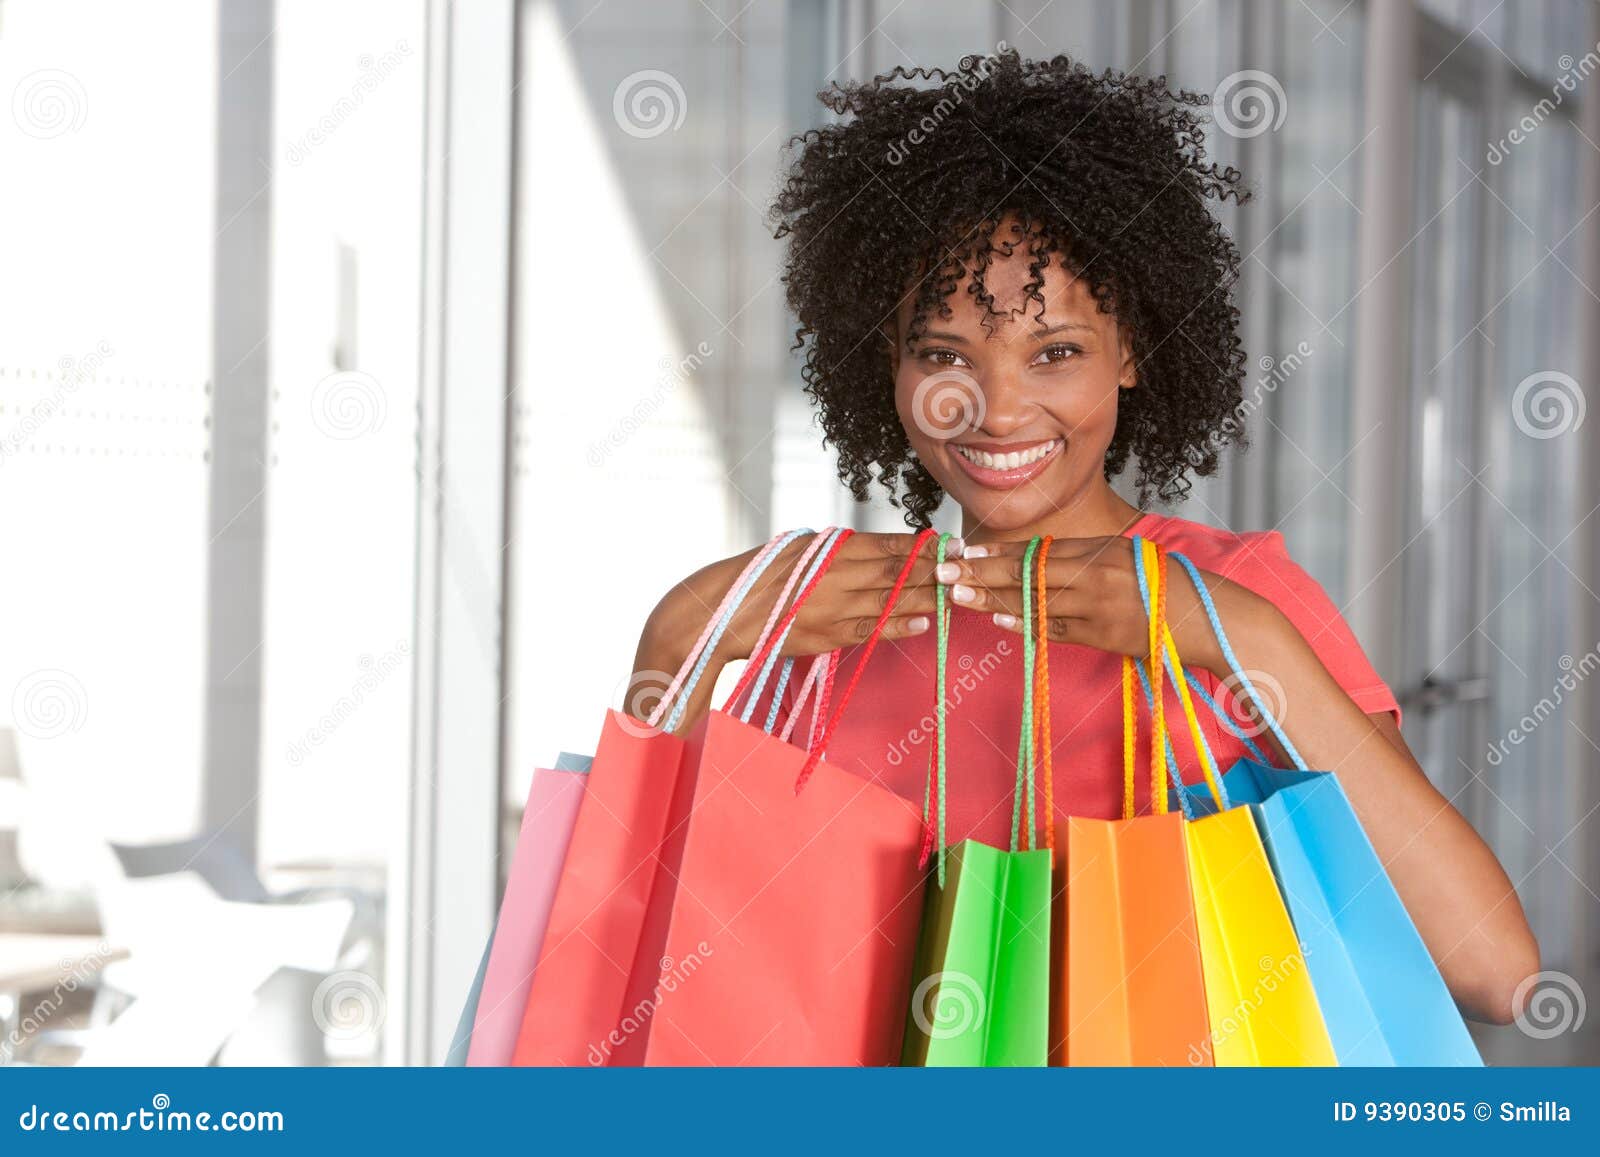 Shopping! stock image. Image of clothing, lifestyles, holding - 9390305